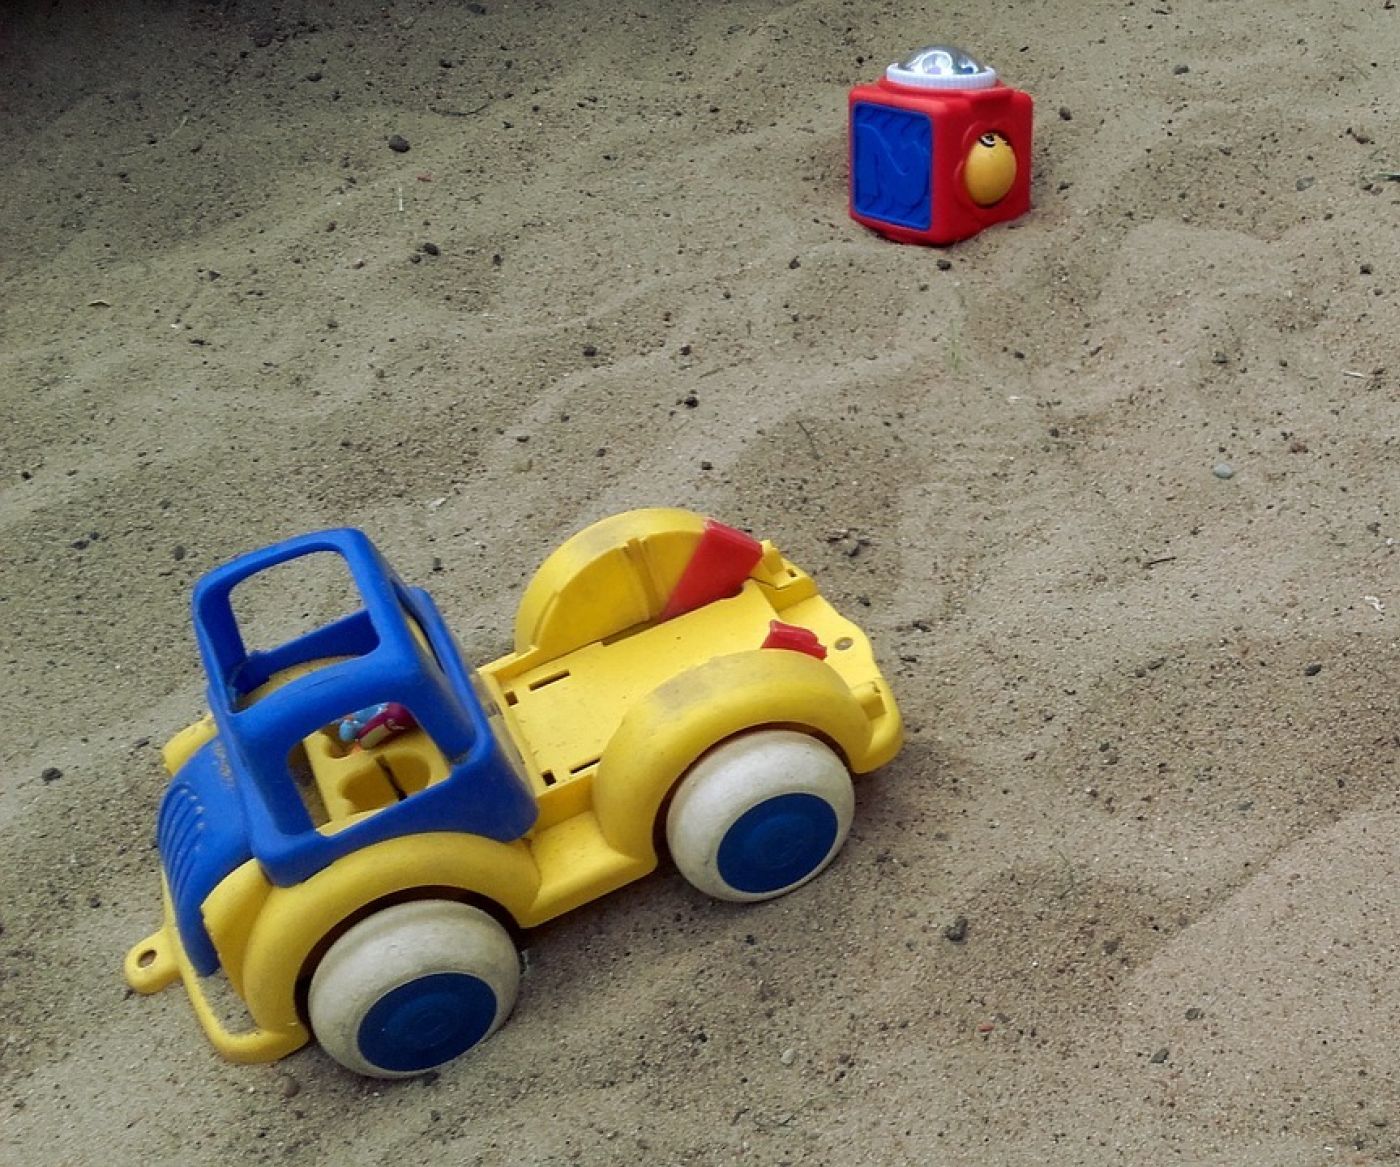 Toys in a sandpit